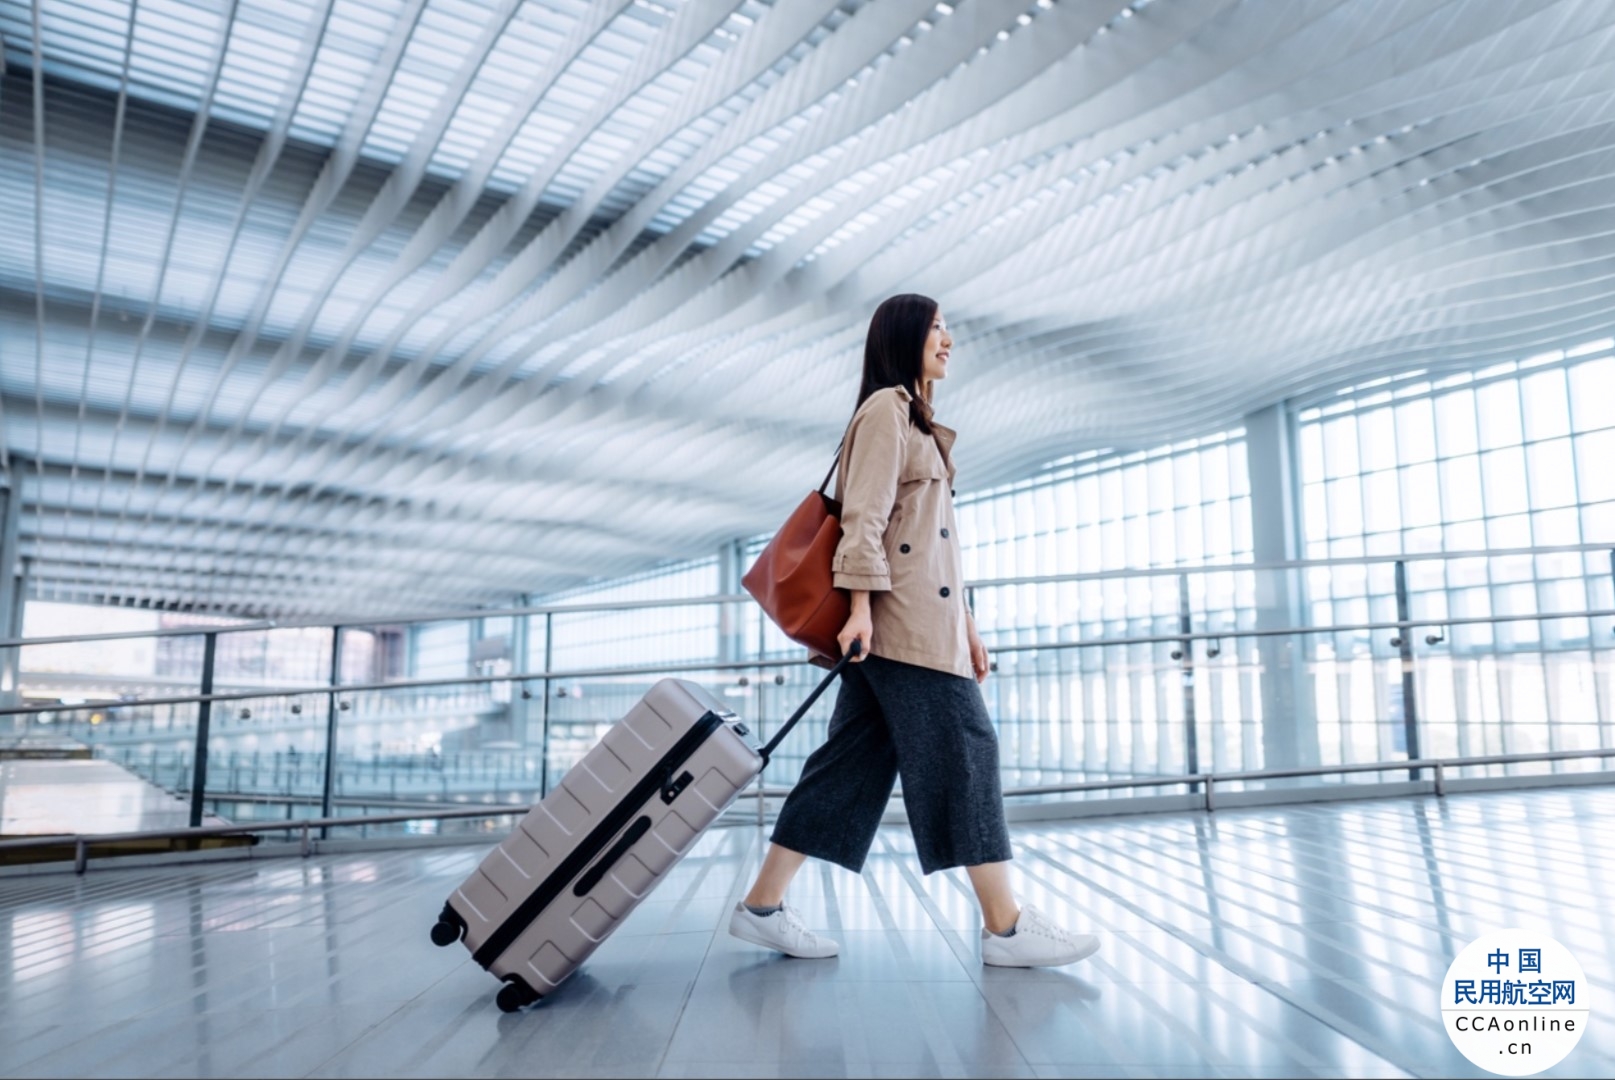 SITA:中国航空公司和机场大力投资旅客体验系统 迎接旅行强劲复苏